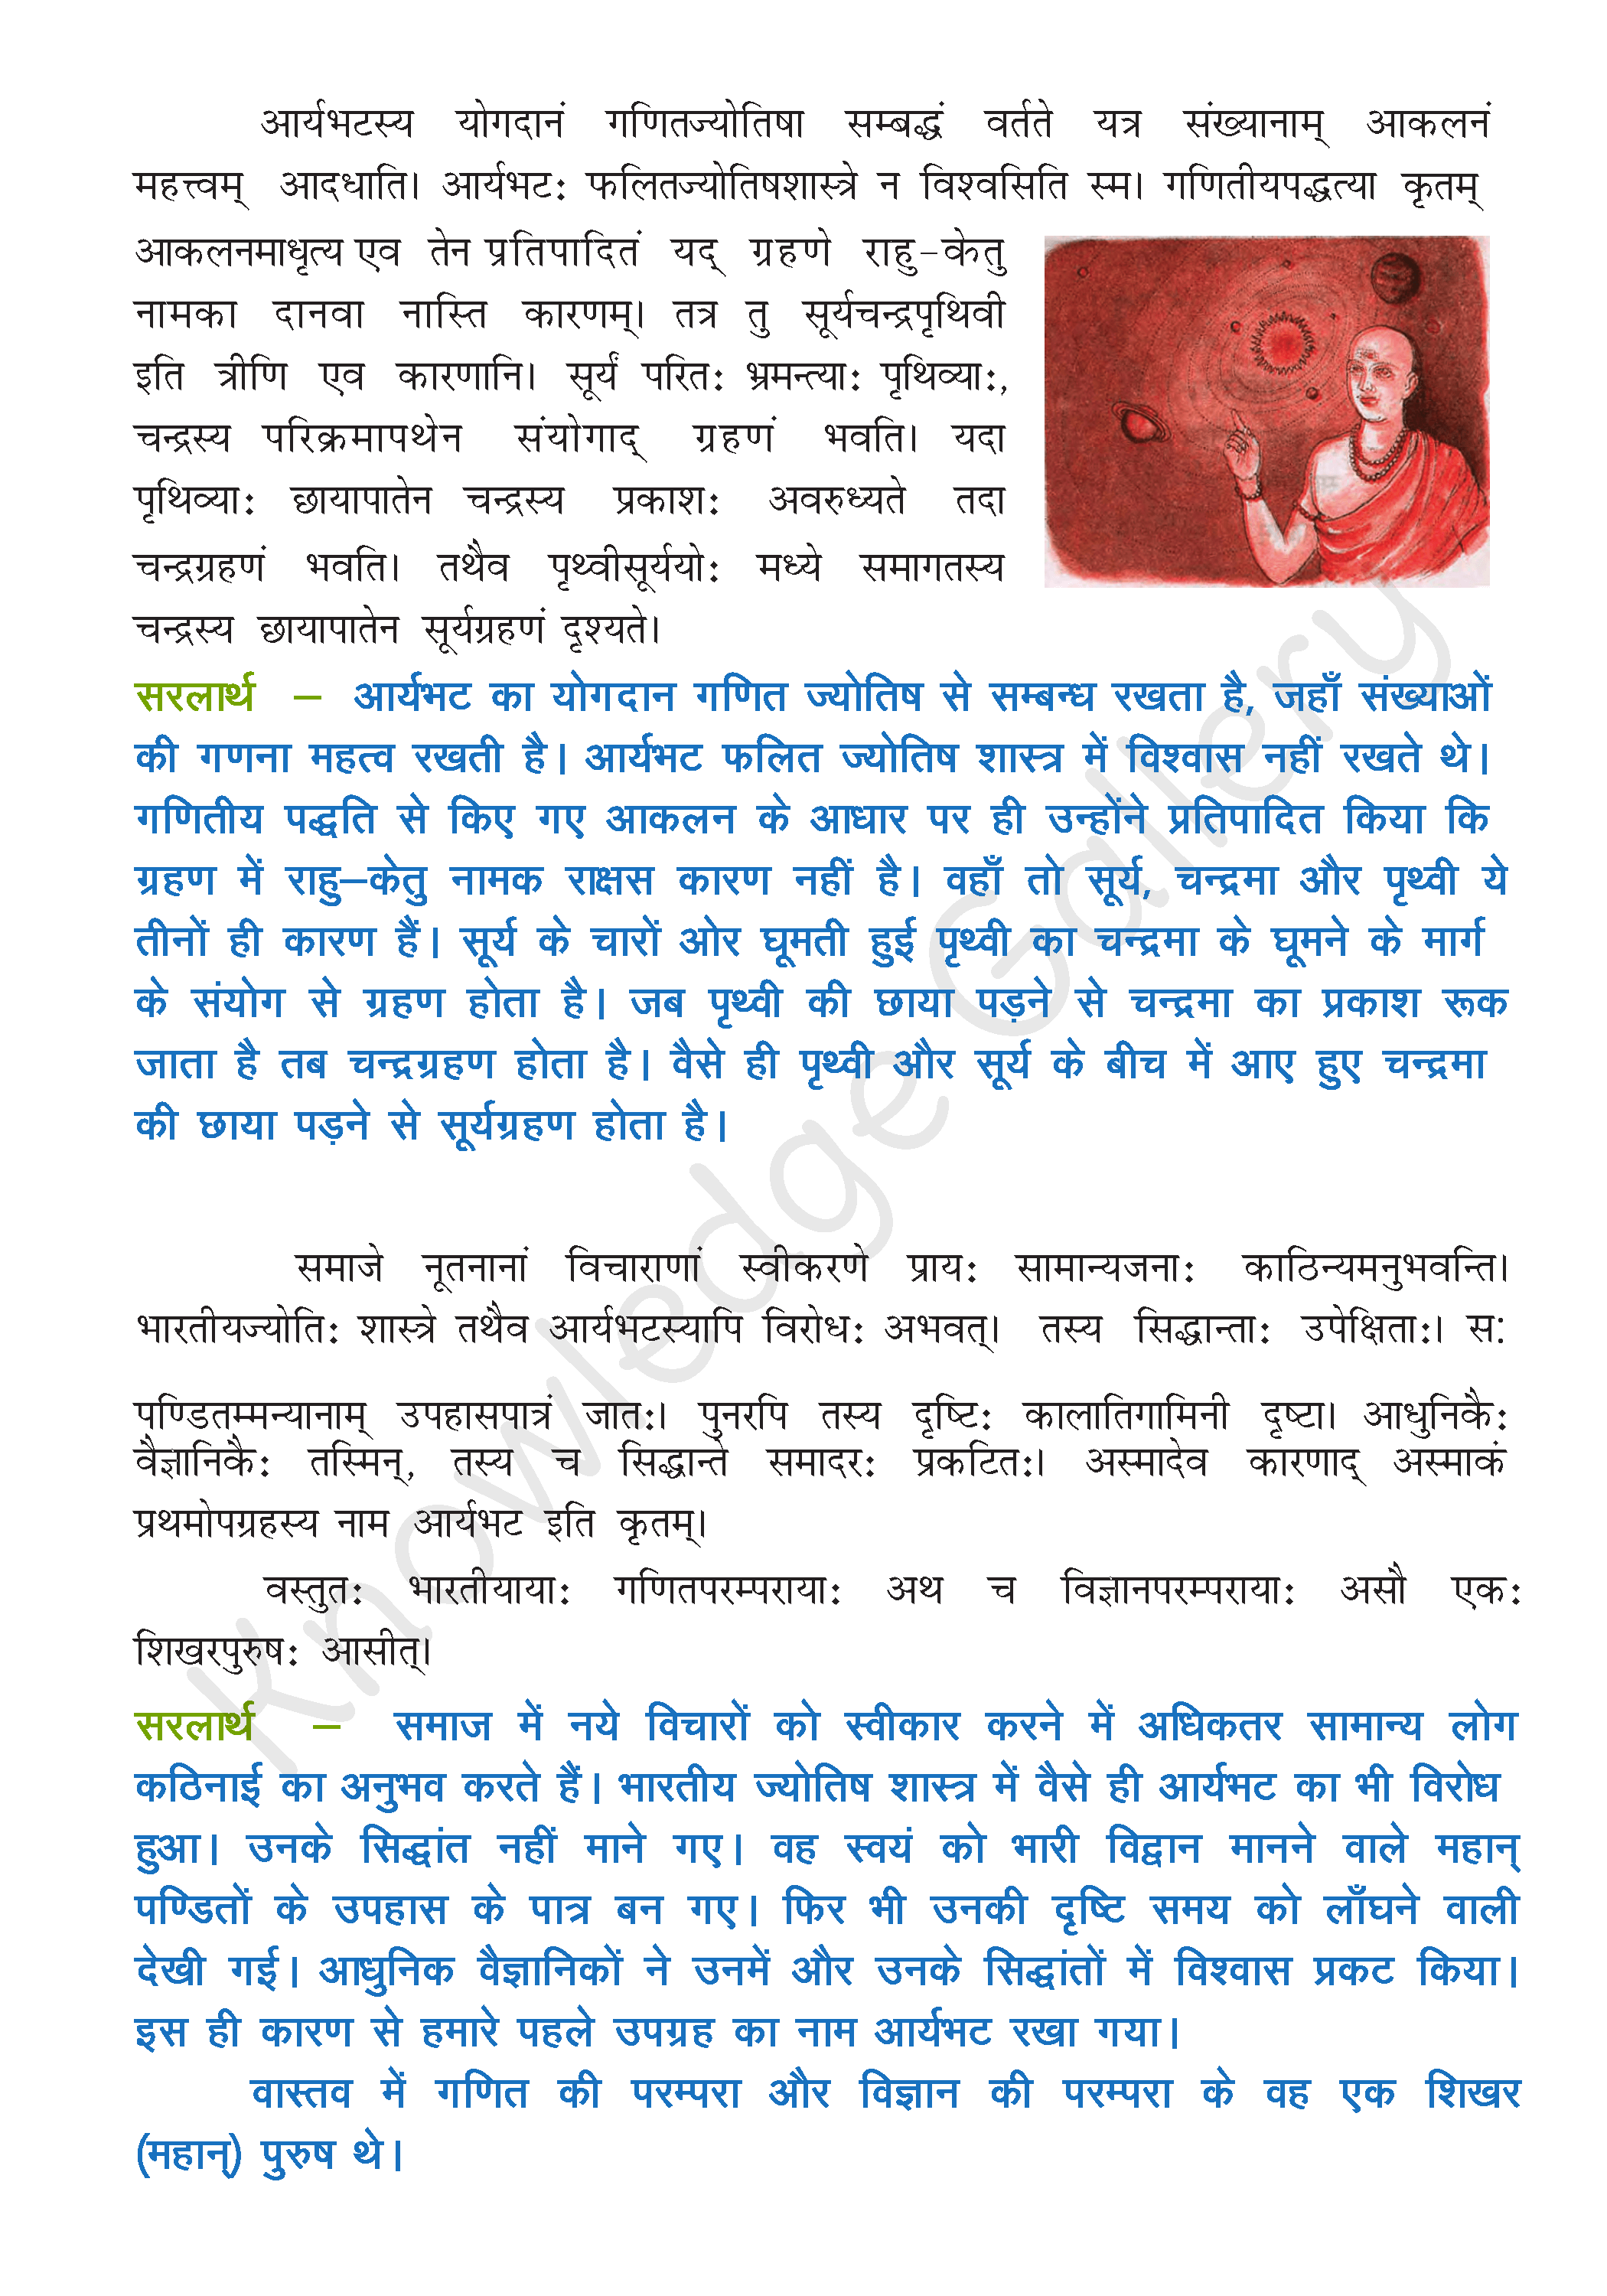 NCERT Solution For Class 8 Sanskrit Chapter 14 part 2